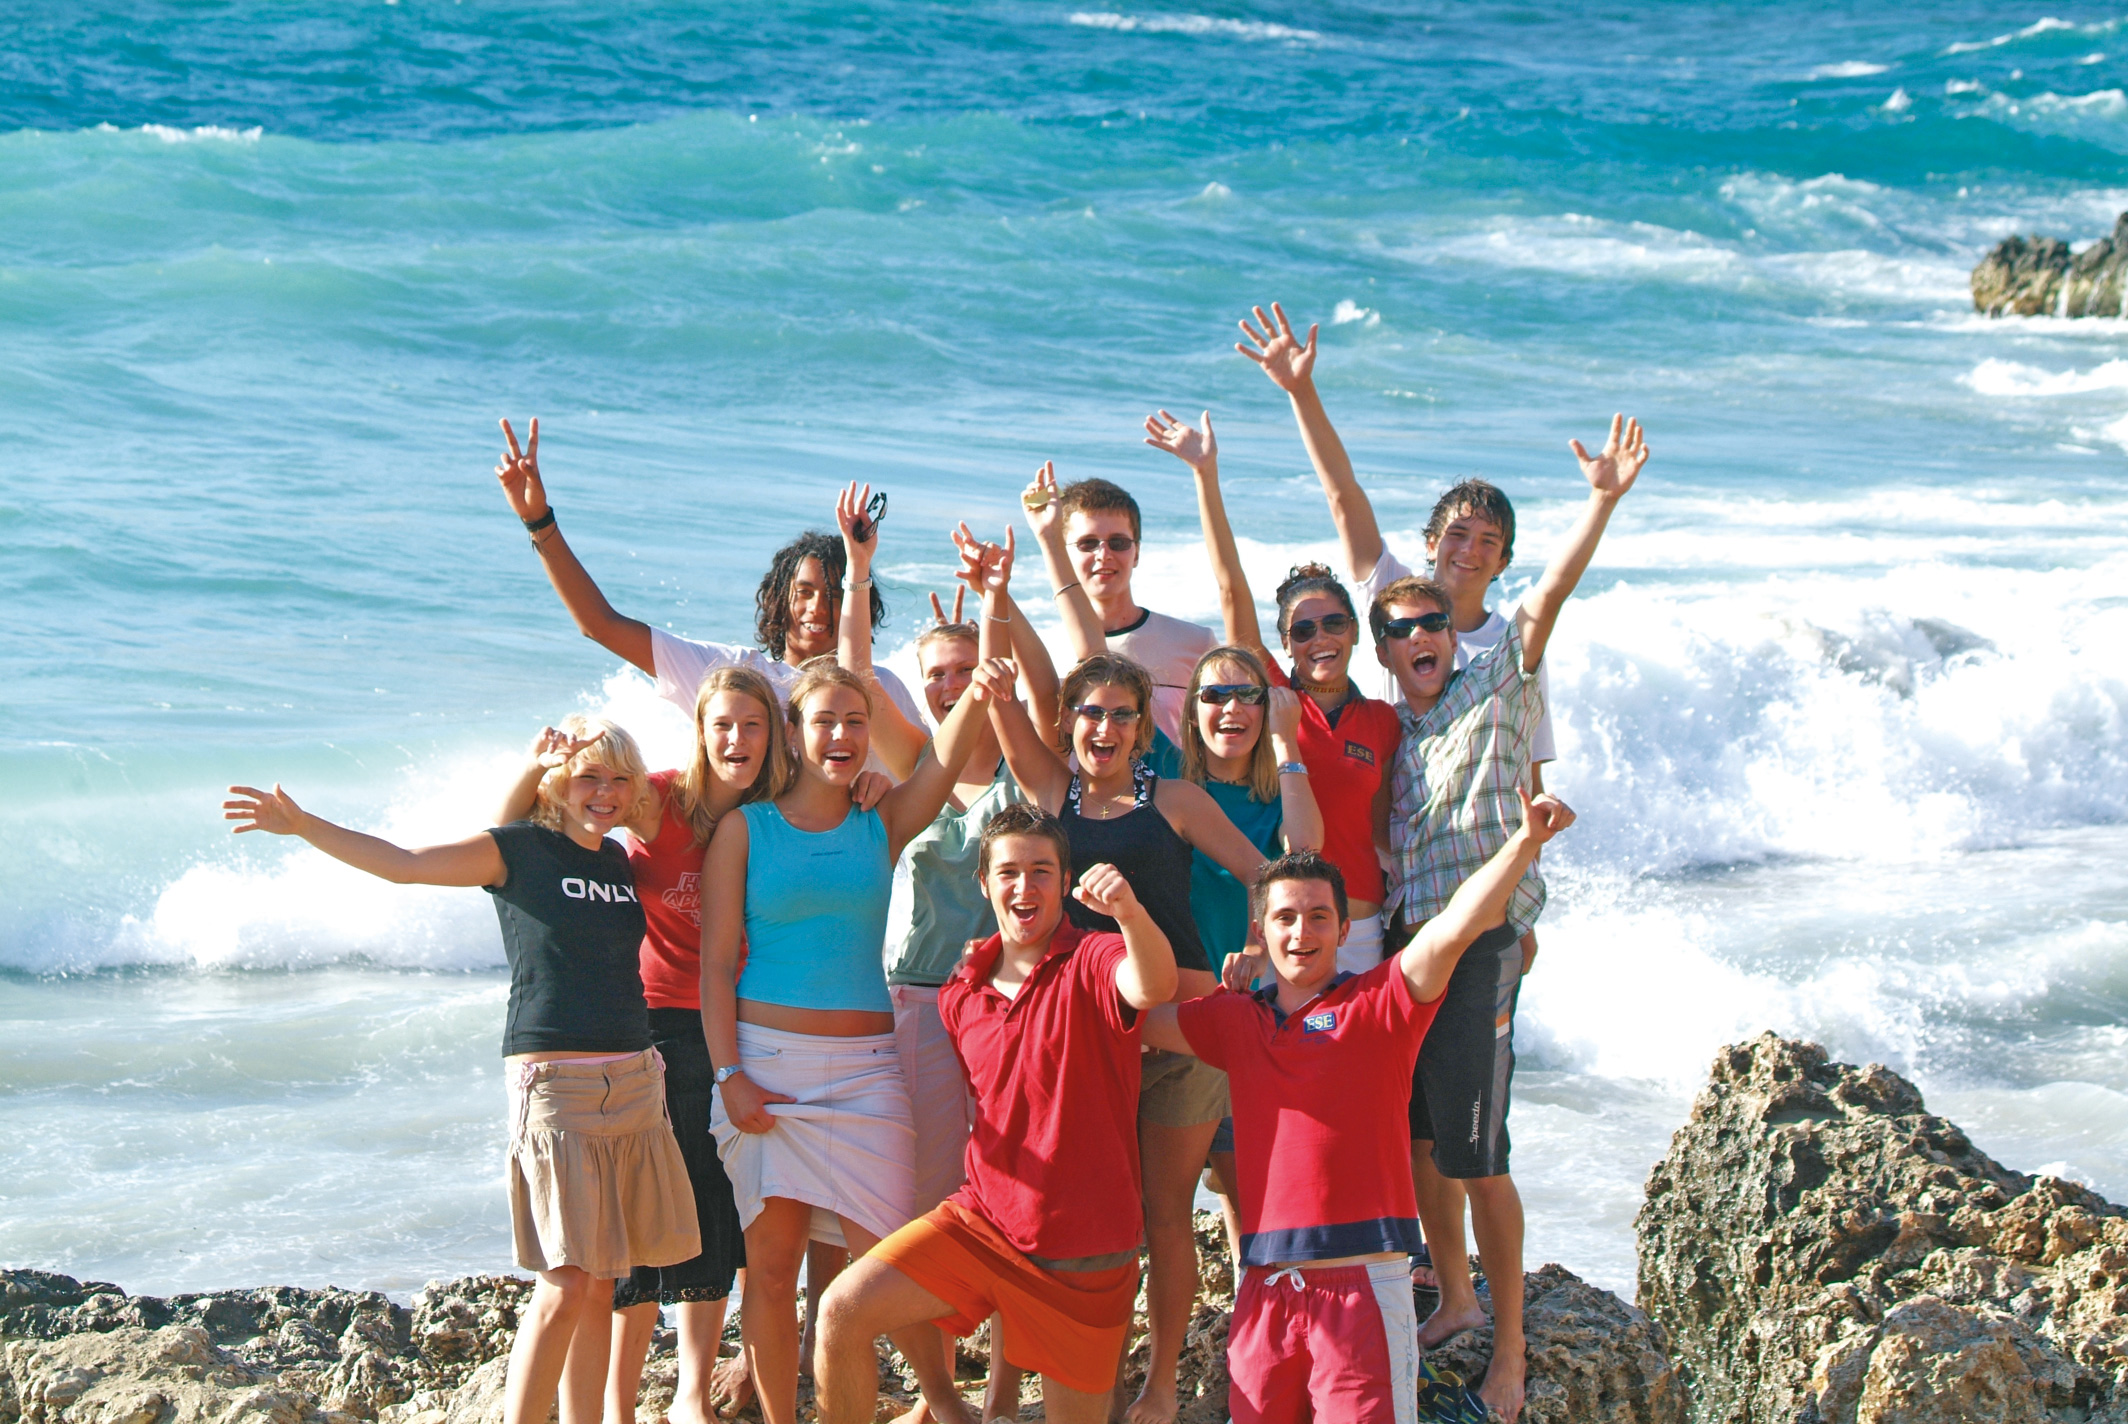 Malta Teens at the beach